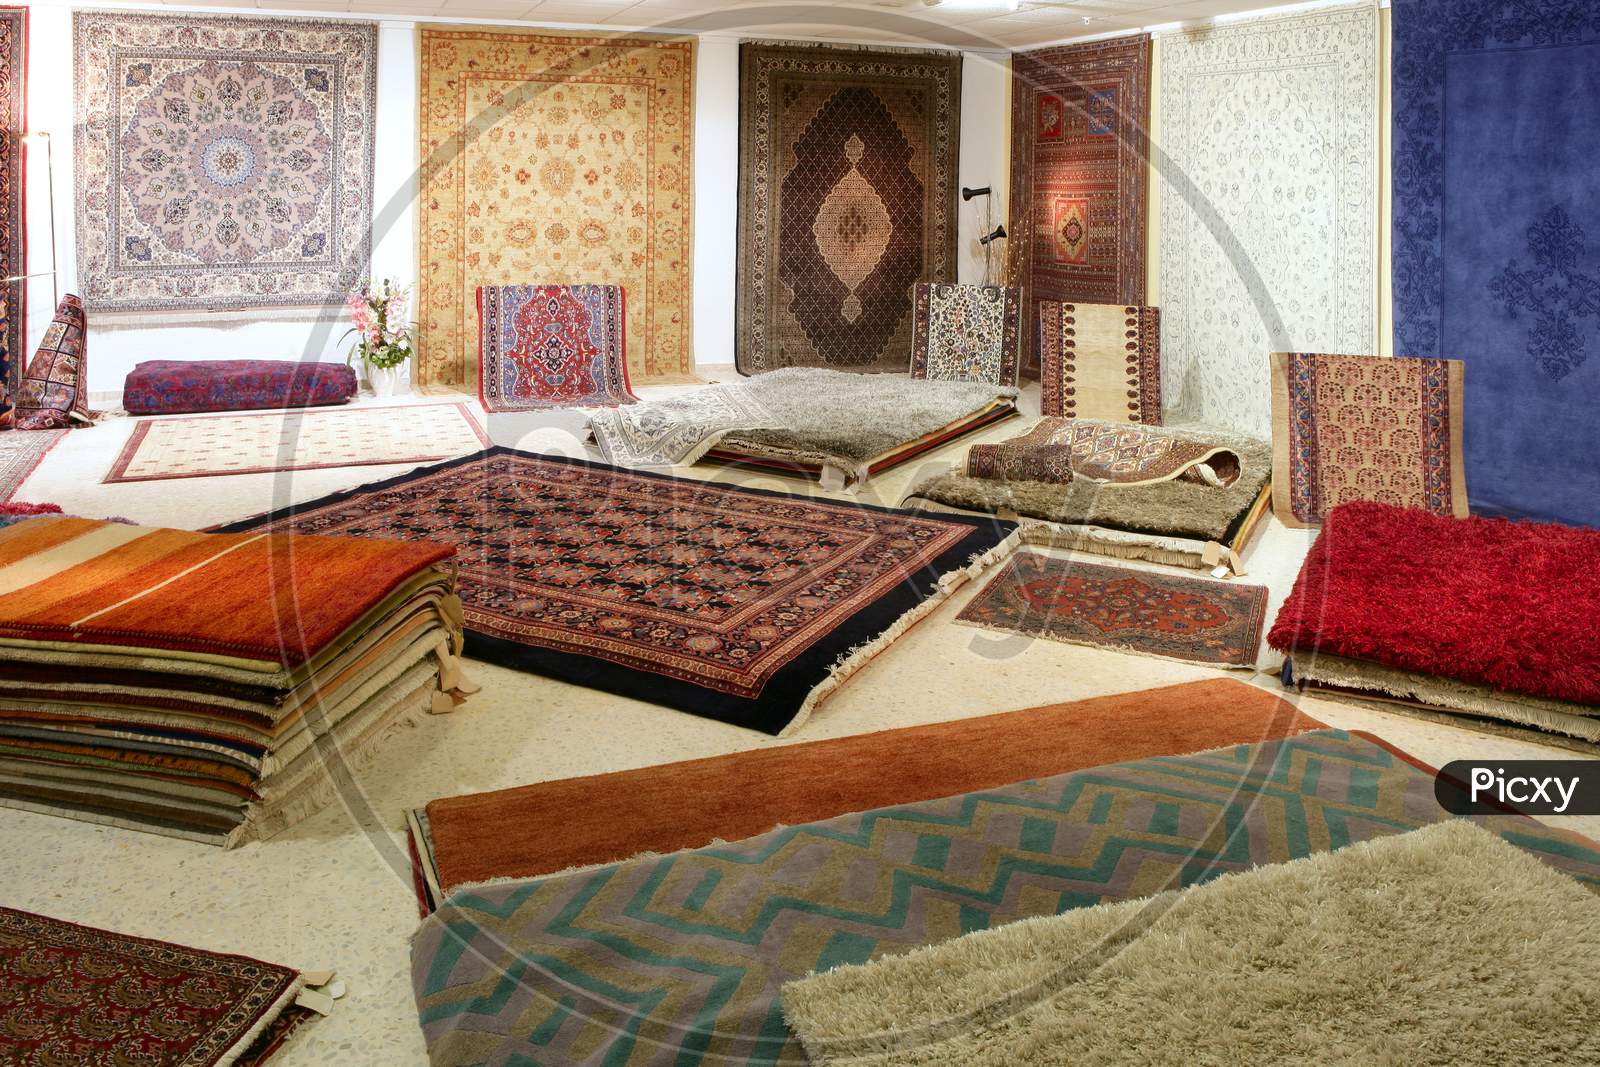 Colorful Carpets in Dubai